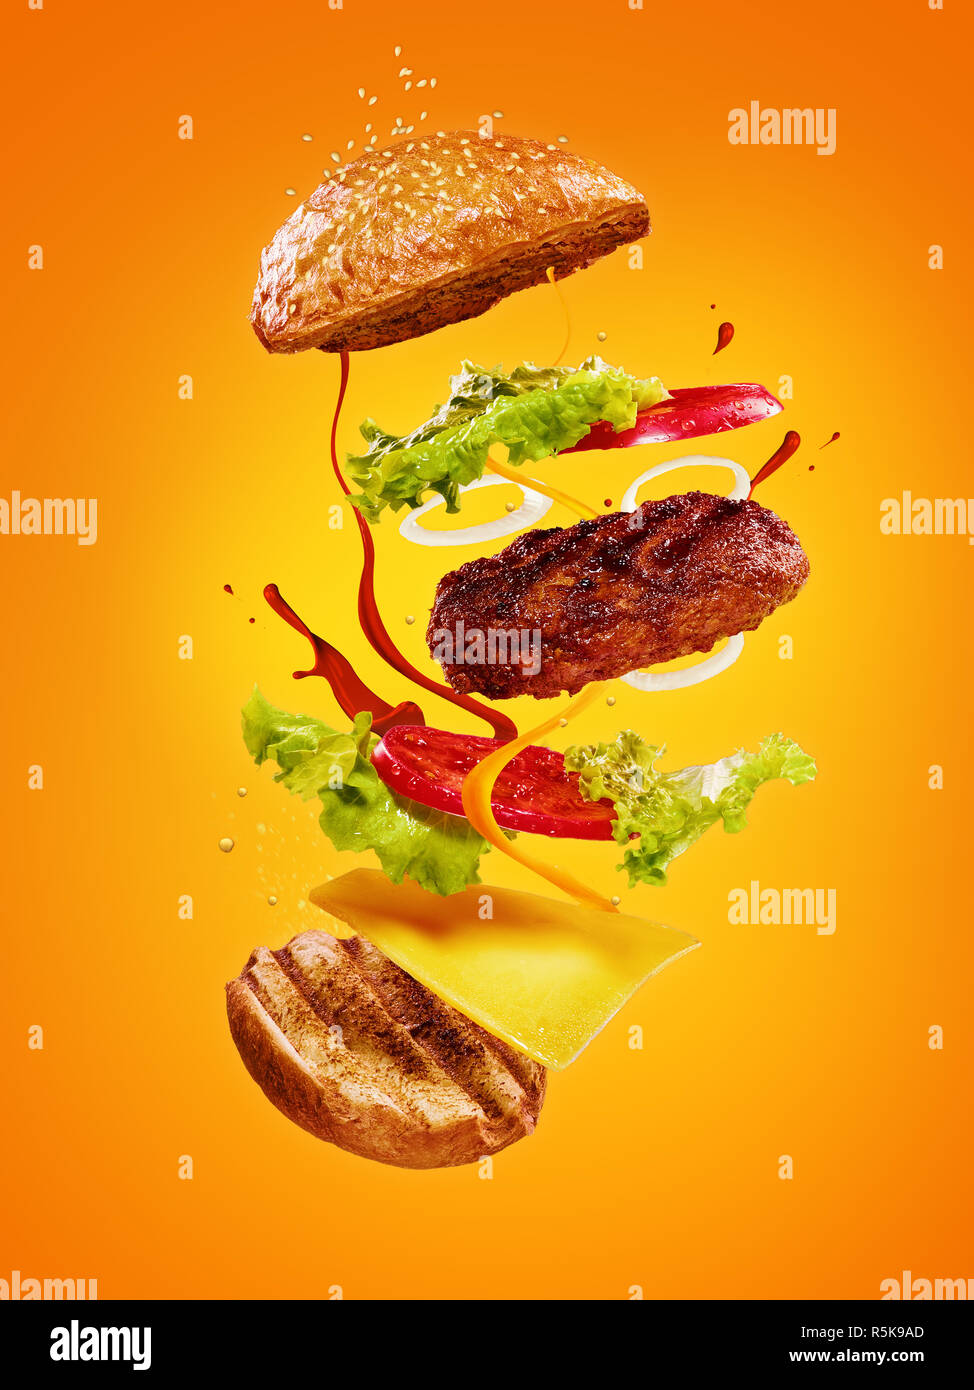 Die Hamburger mit fliegenden Zutaten auf orangefarbenem Hintergrund Stockfoto